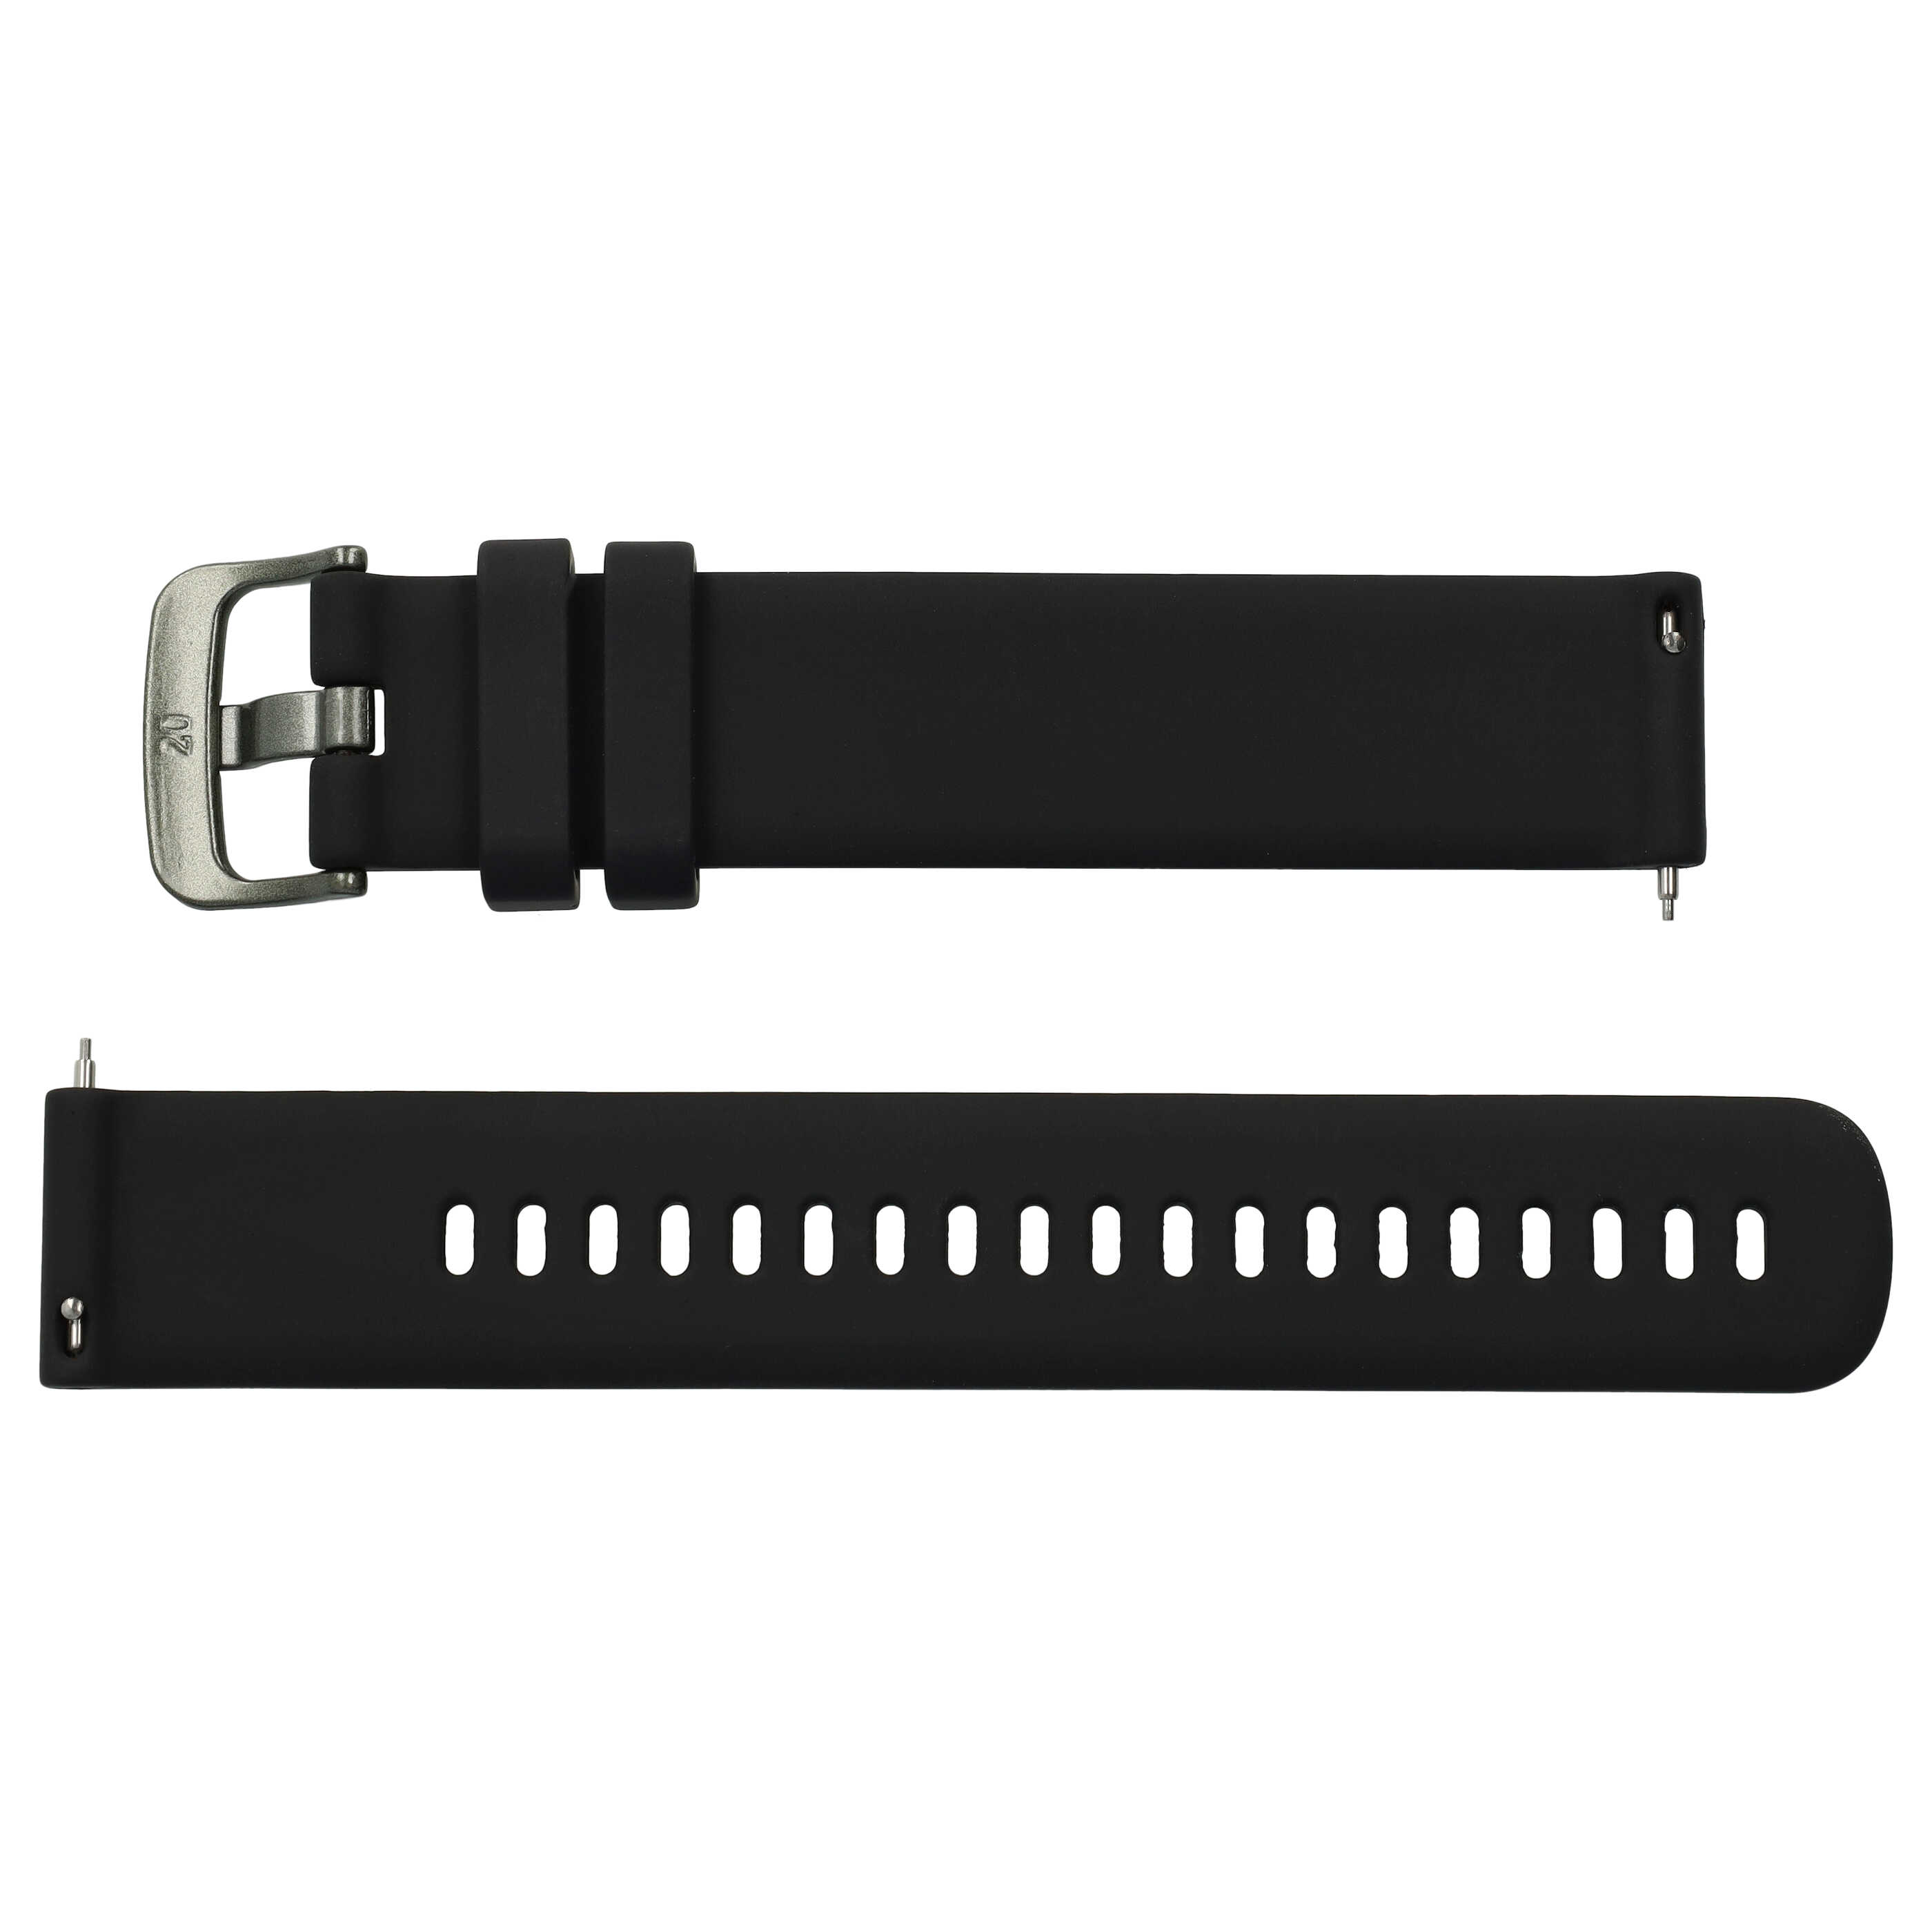 Bracelet L de remplacement pour montre intelligente Samsung Galaxy Watch - tour de montre max 260 mm, silicone